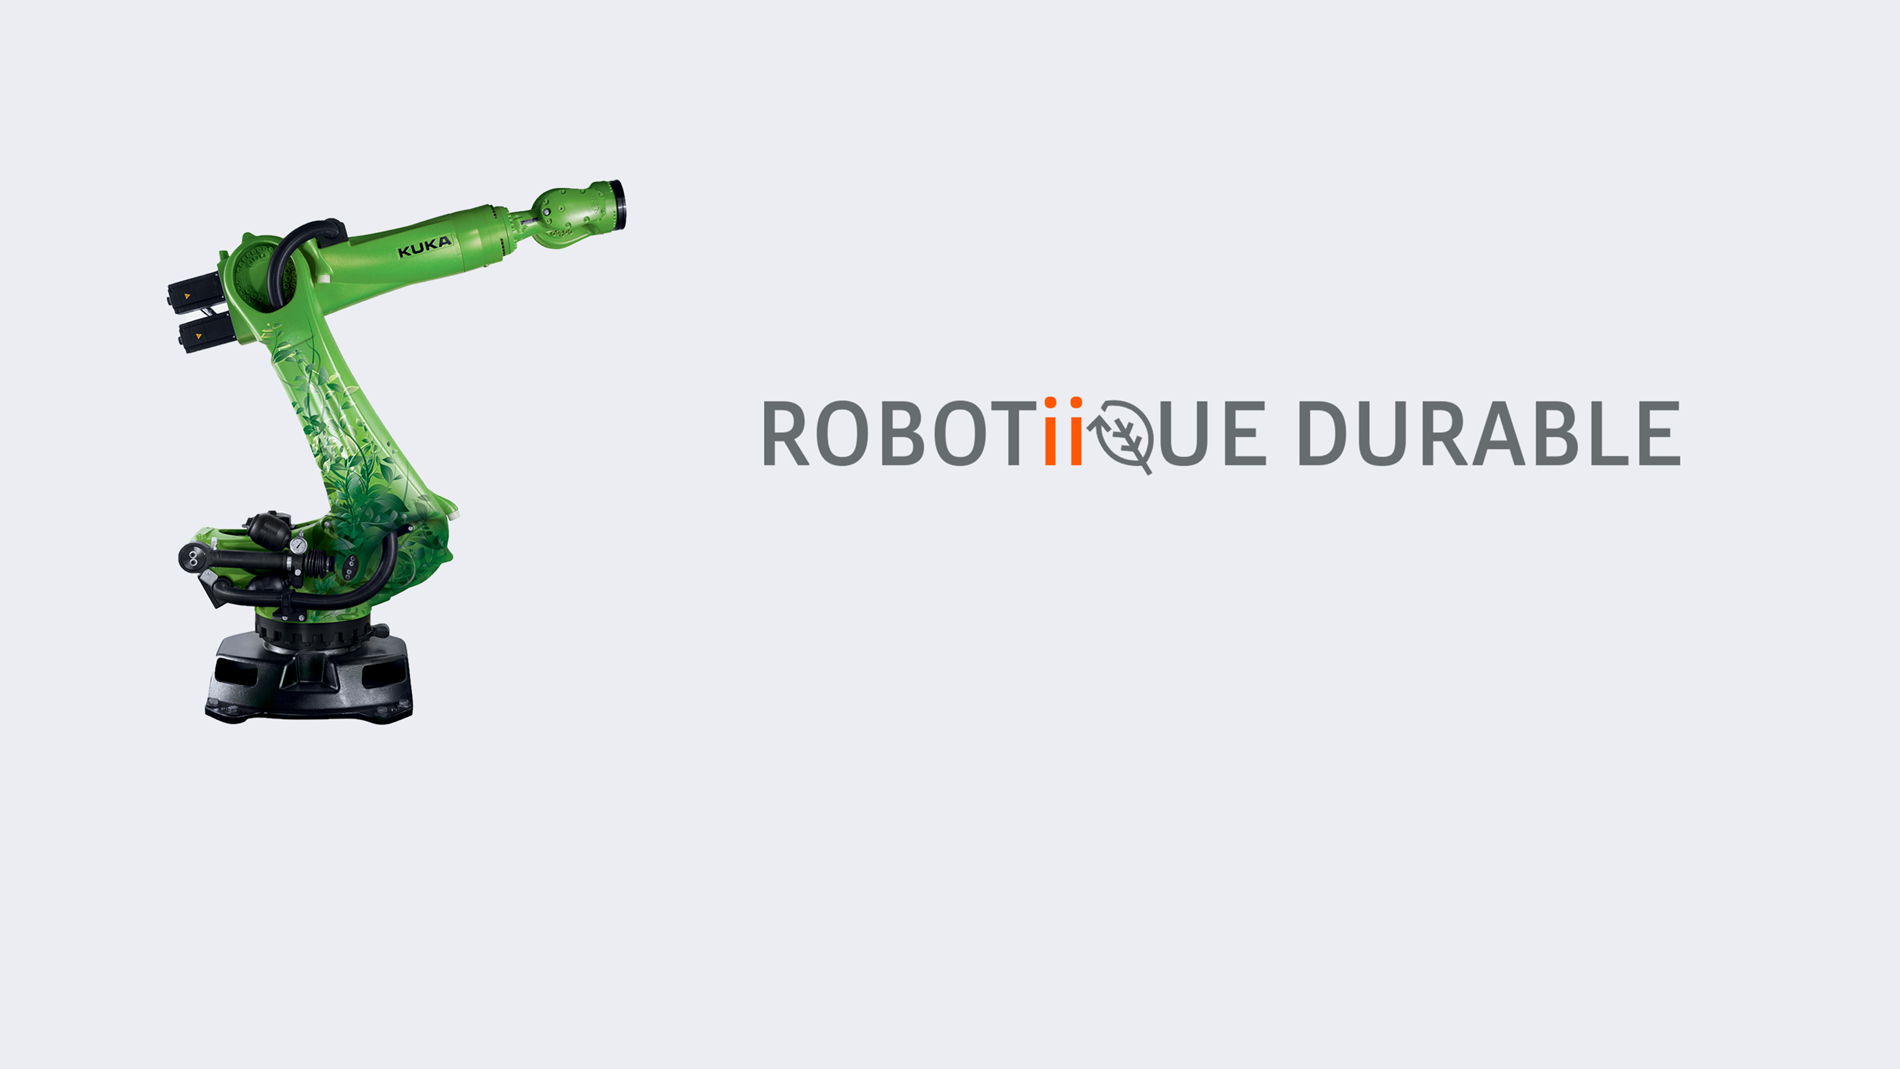 Robotiique_durable_header